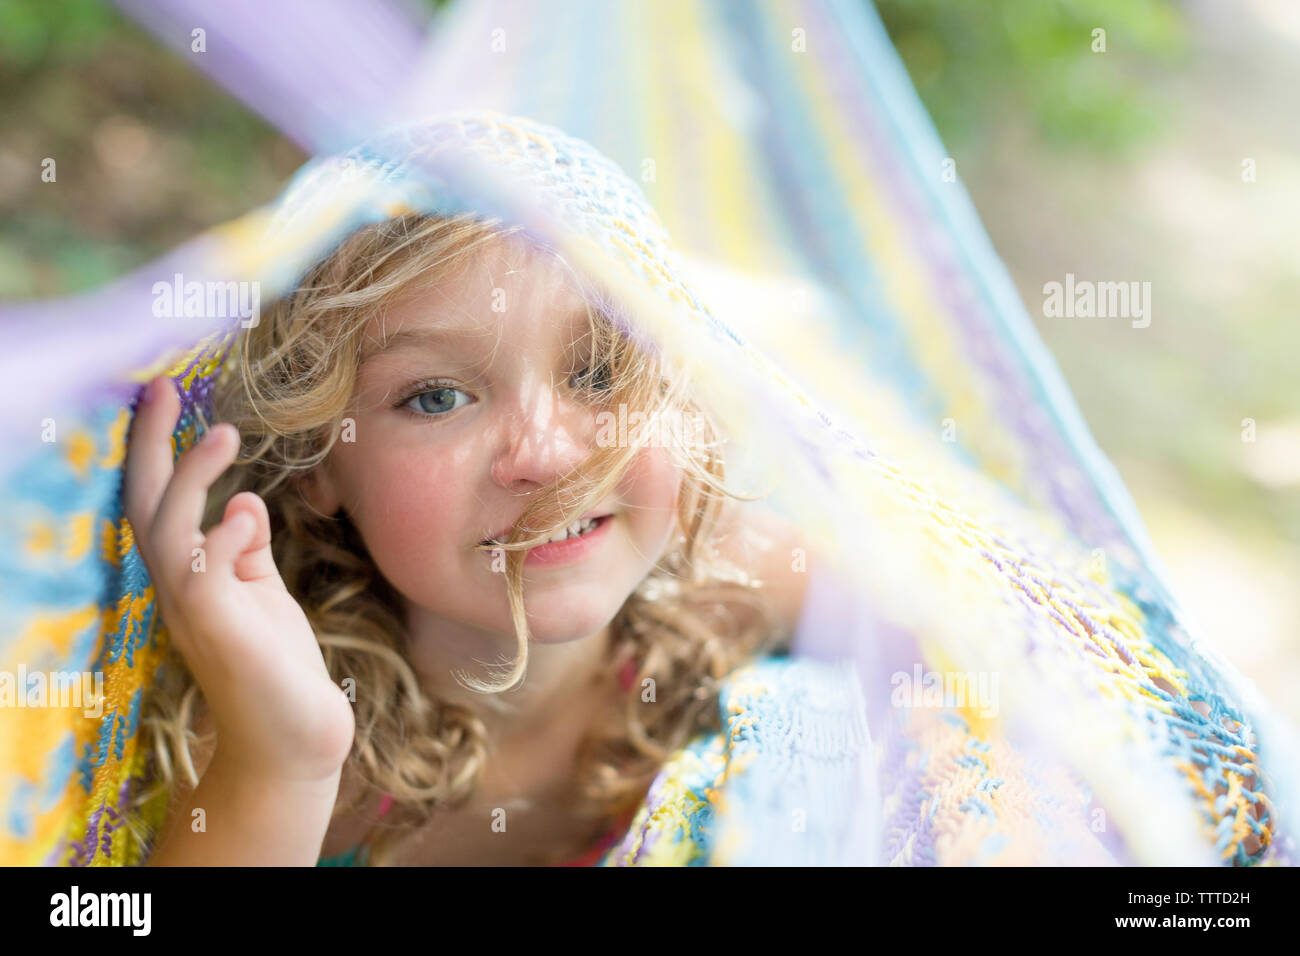 In der Nähe von einem kleinen Mädchen mit lockigem Haar in einem farbenfrohen Hängematte Stockfoto